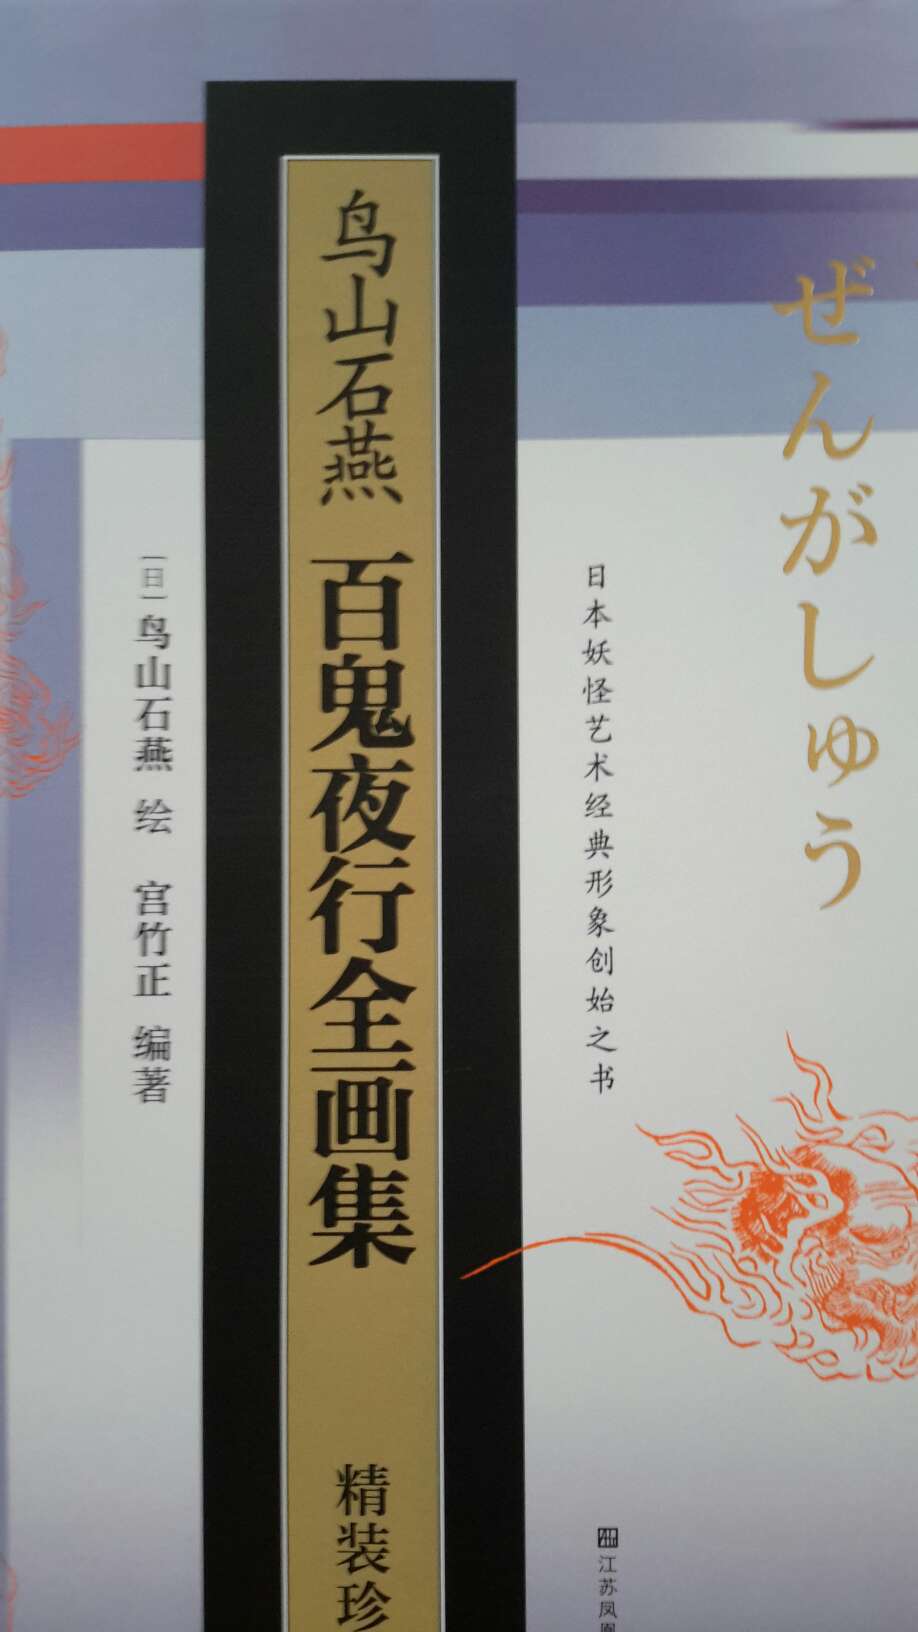 厚重精装本，质量精良，了解一下日本的妖怪文化。像日版的山海经与聊斋志异的综合体。的活动超给力。欣.常！,！